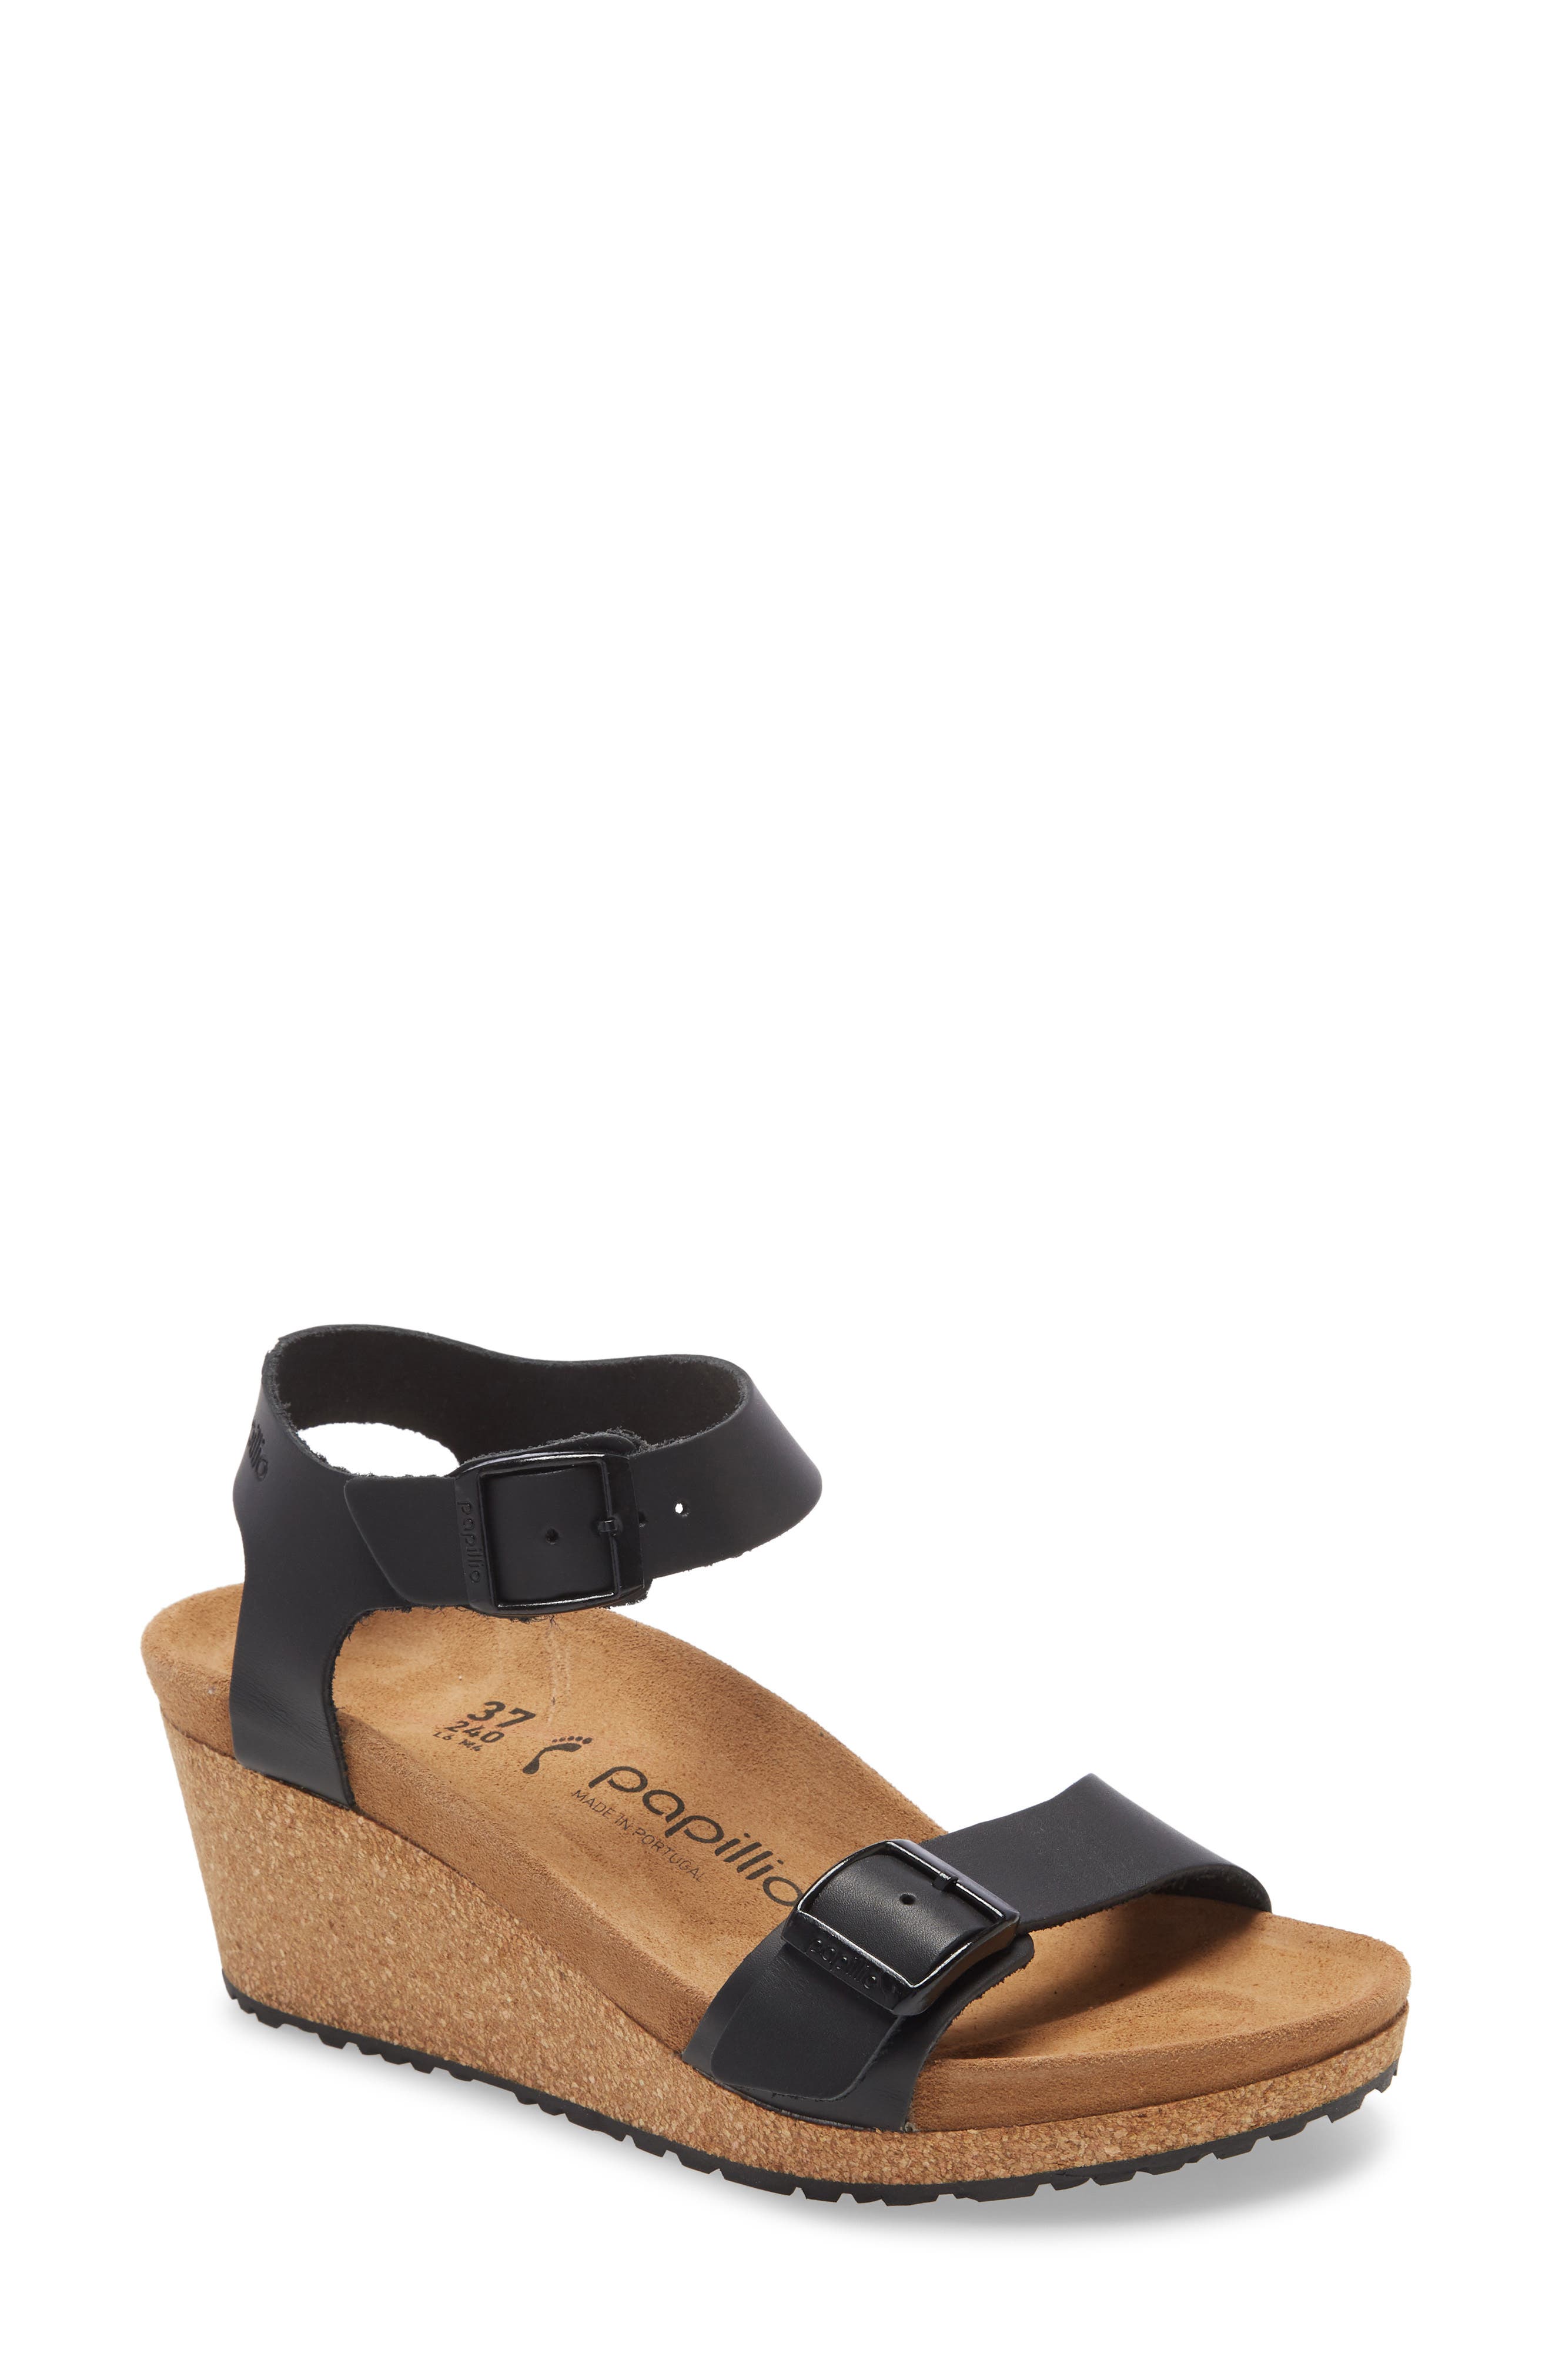 wedge birkenstock style sandals